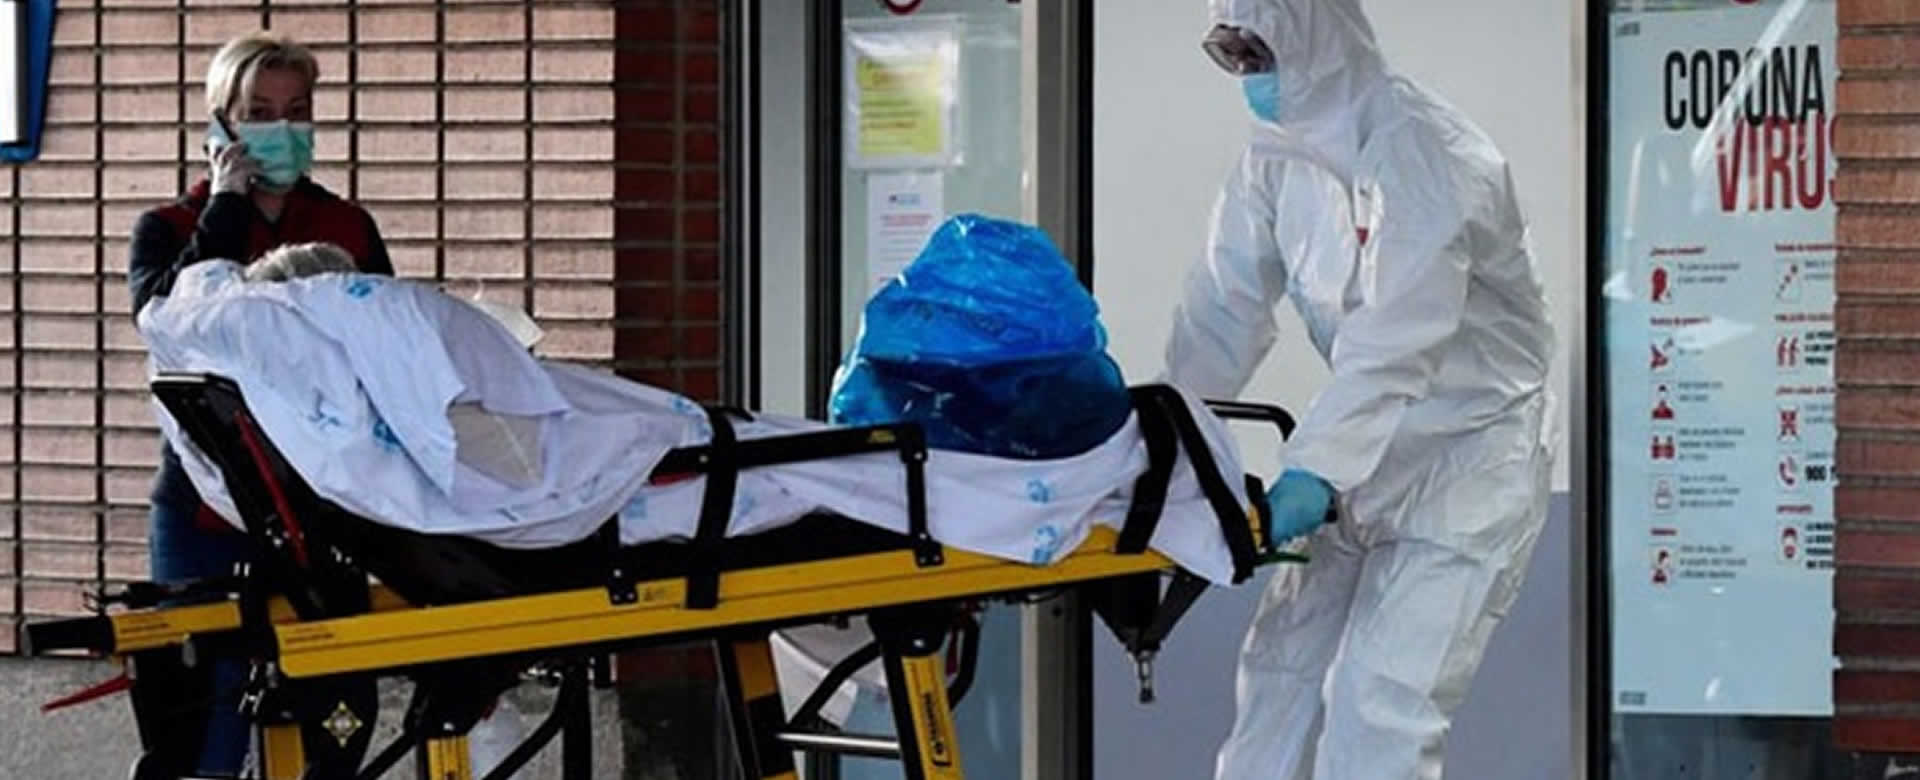 España registra 932 muertos y supera a Italia en infectados por COVID-19